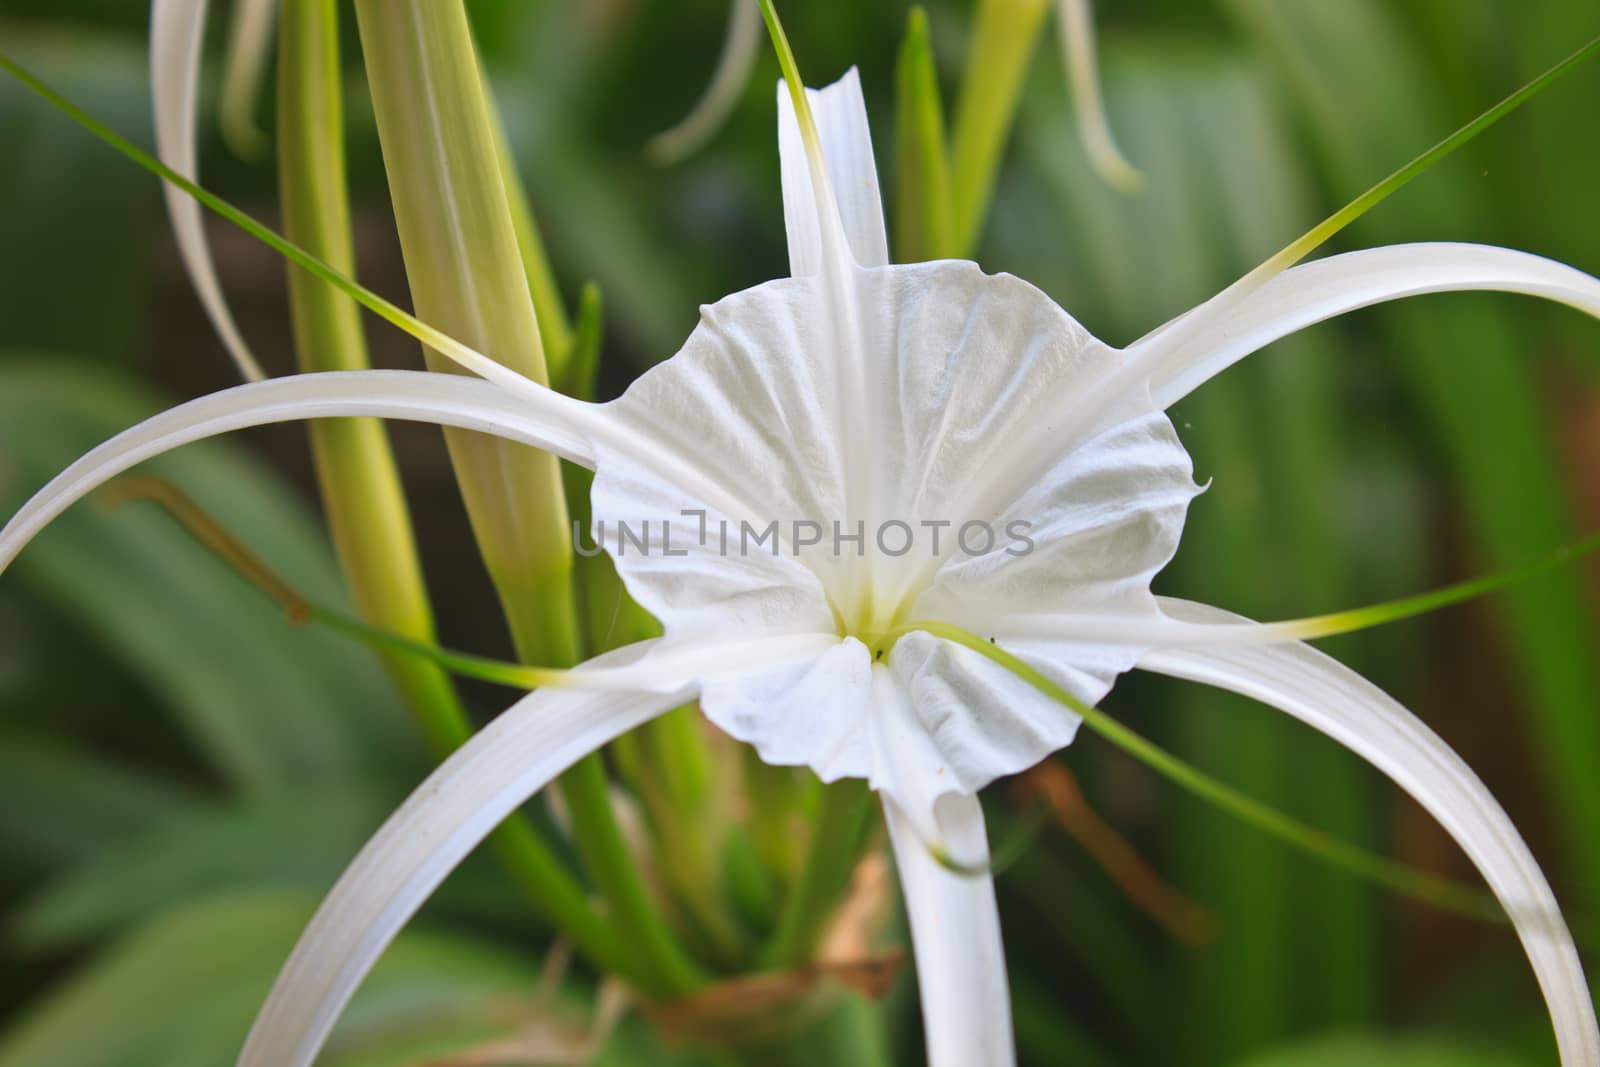 White spider lily flower, Hymenocallis Caribaea in garden